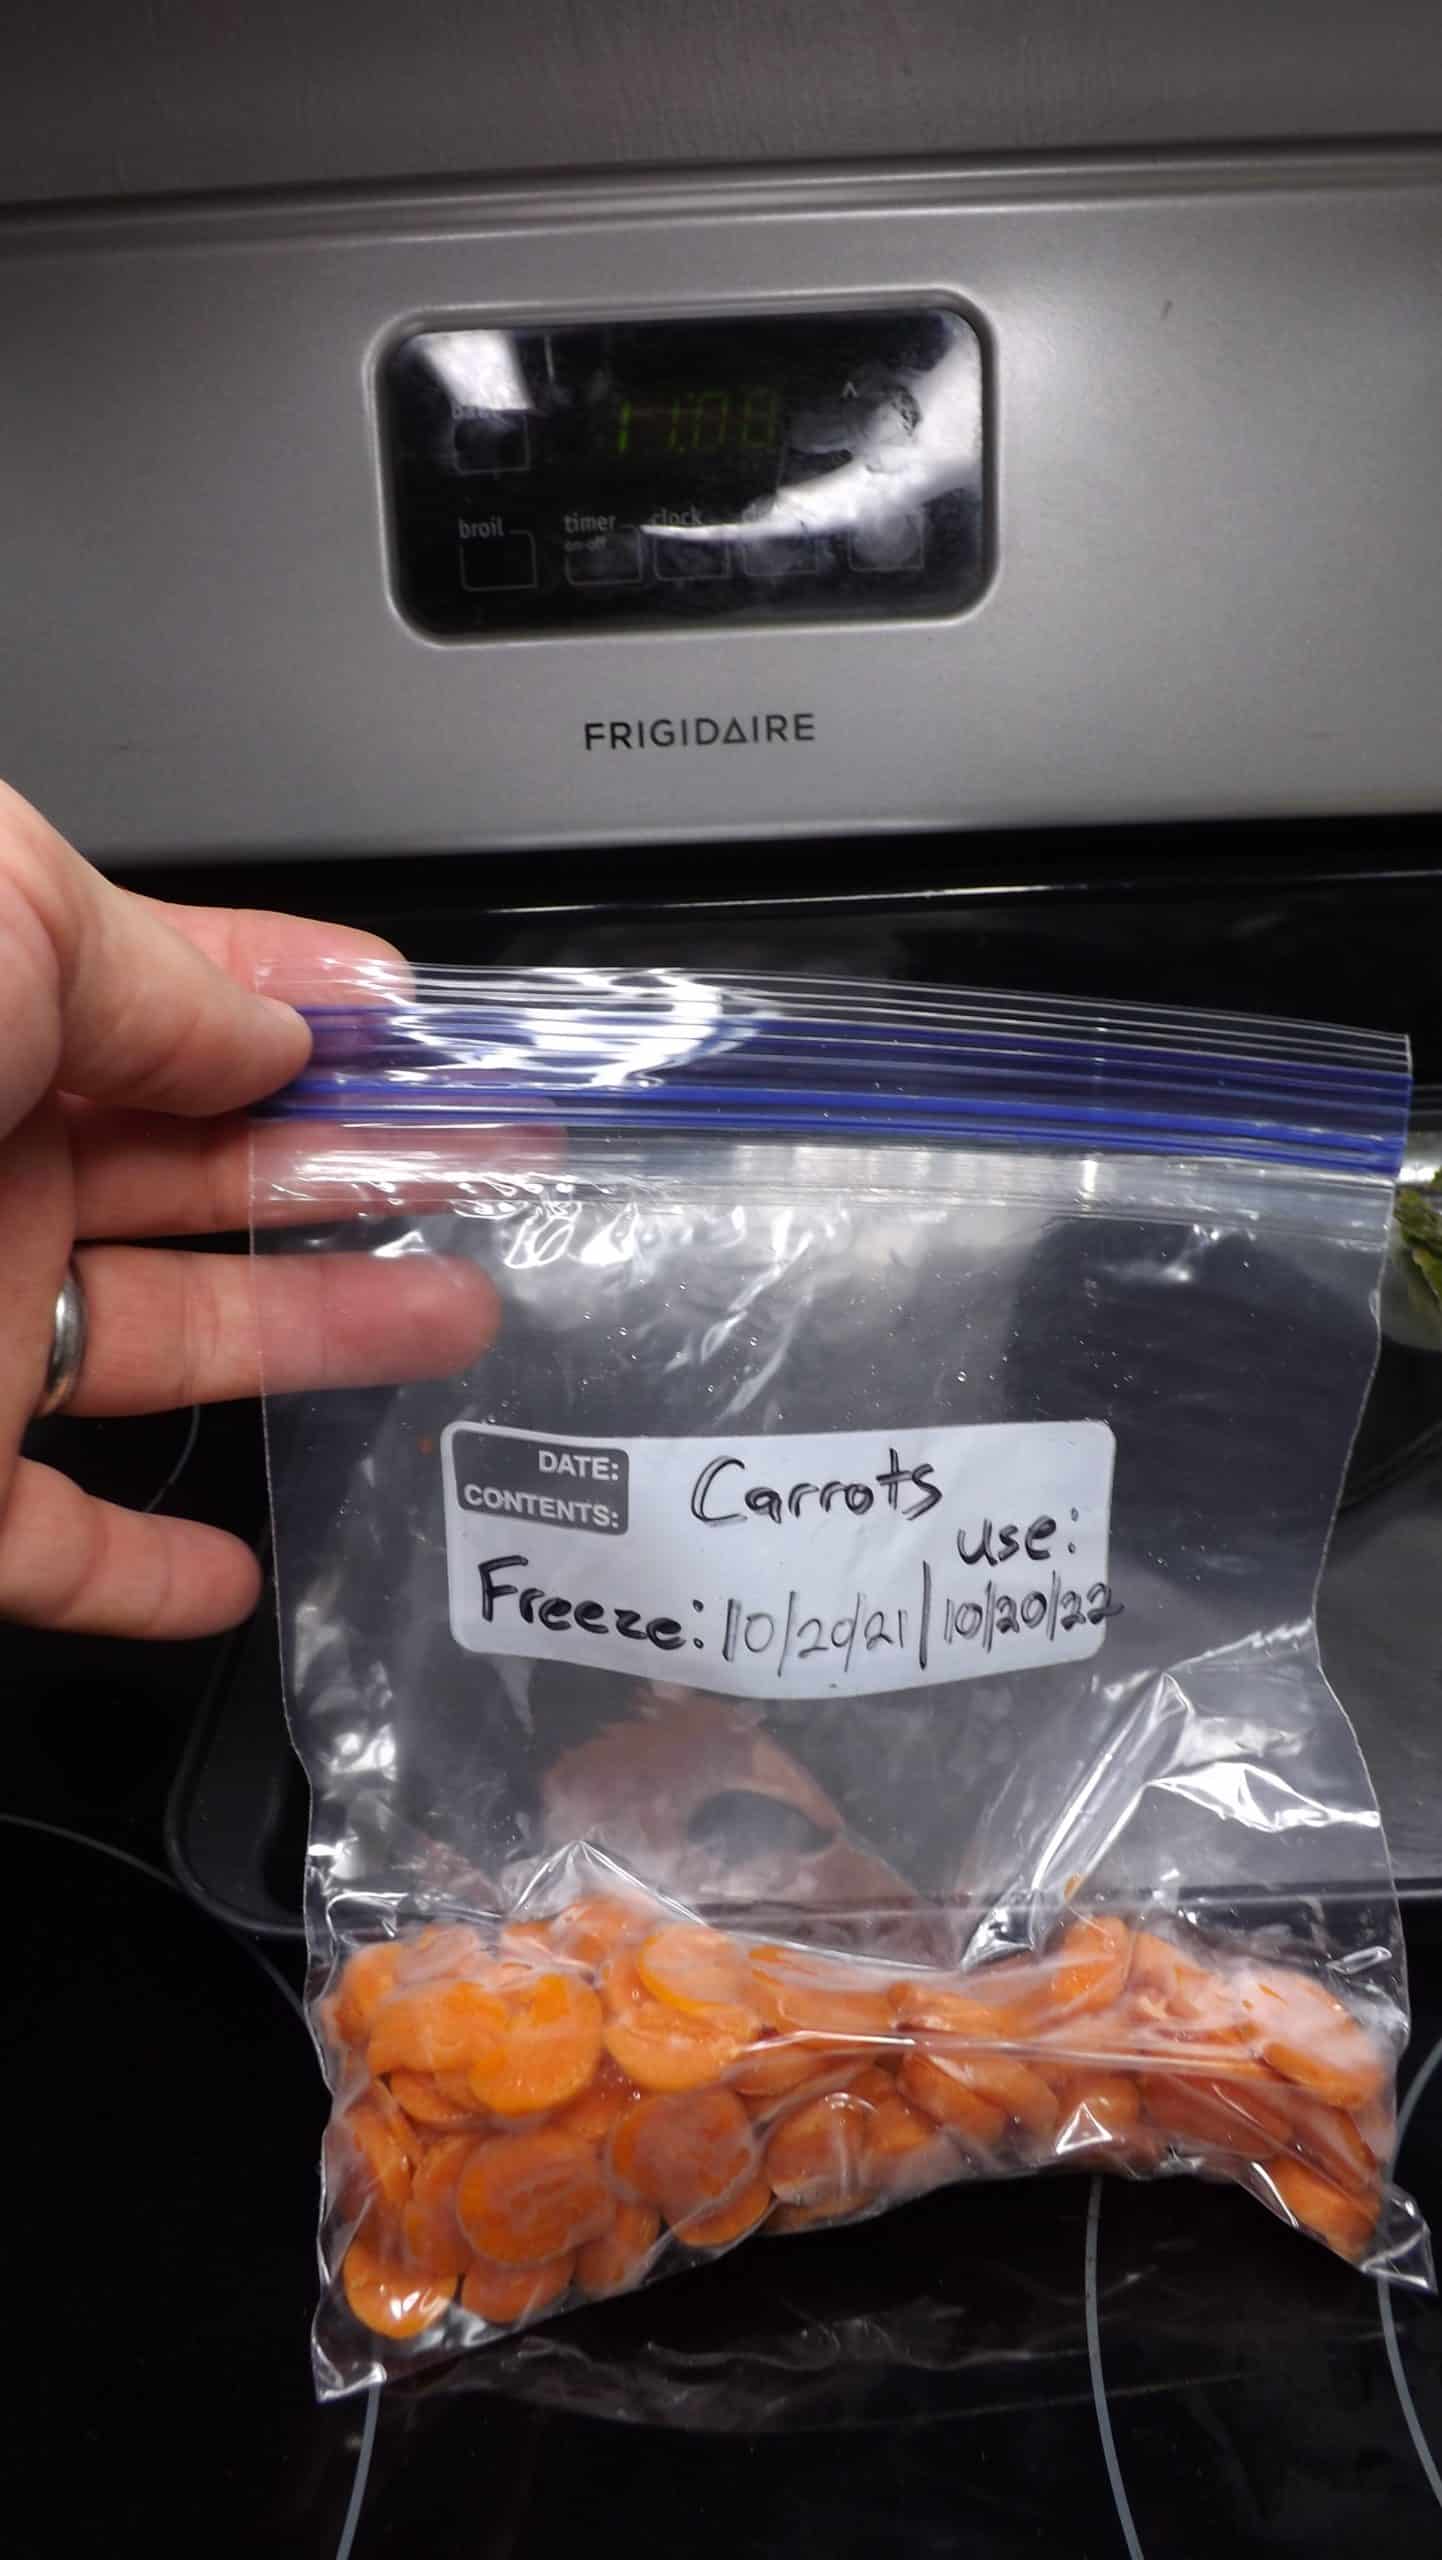 freezer bags of frozen carrots